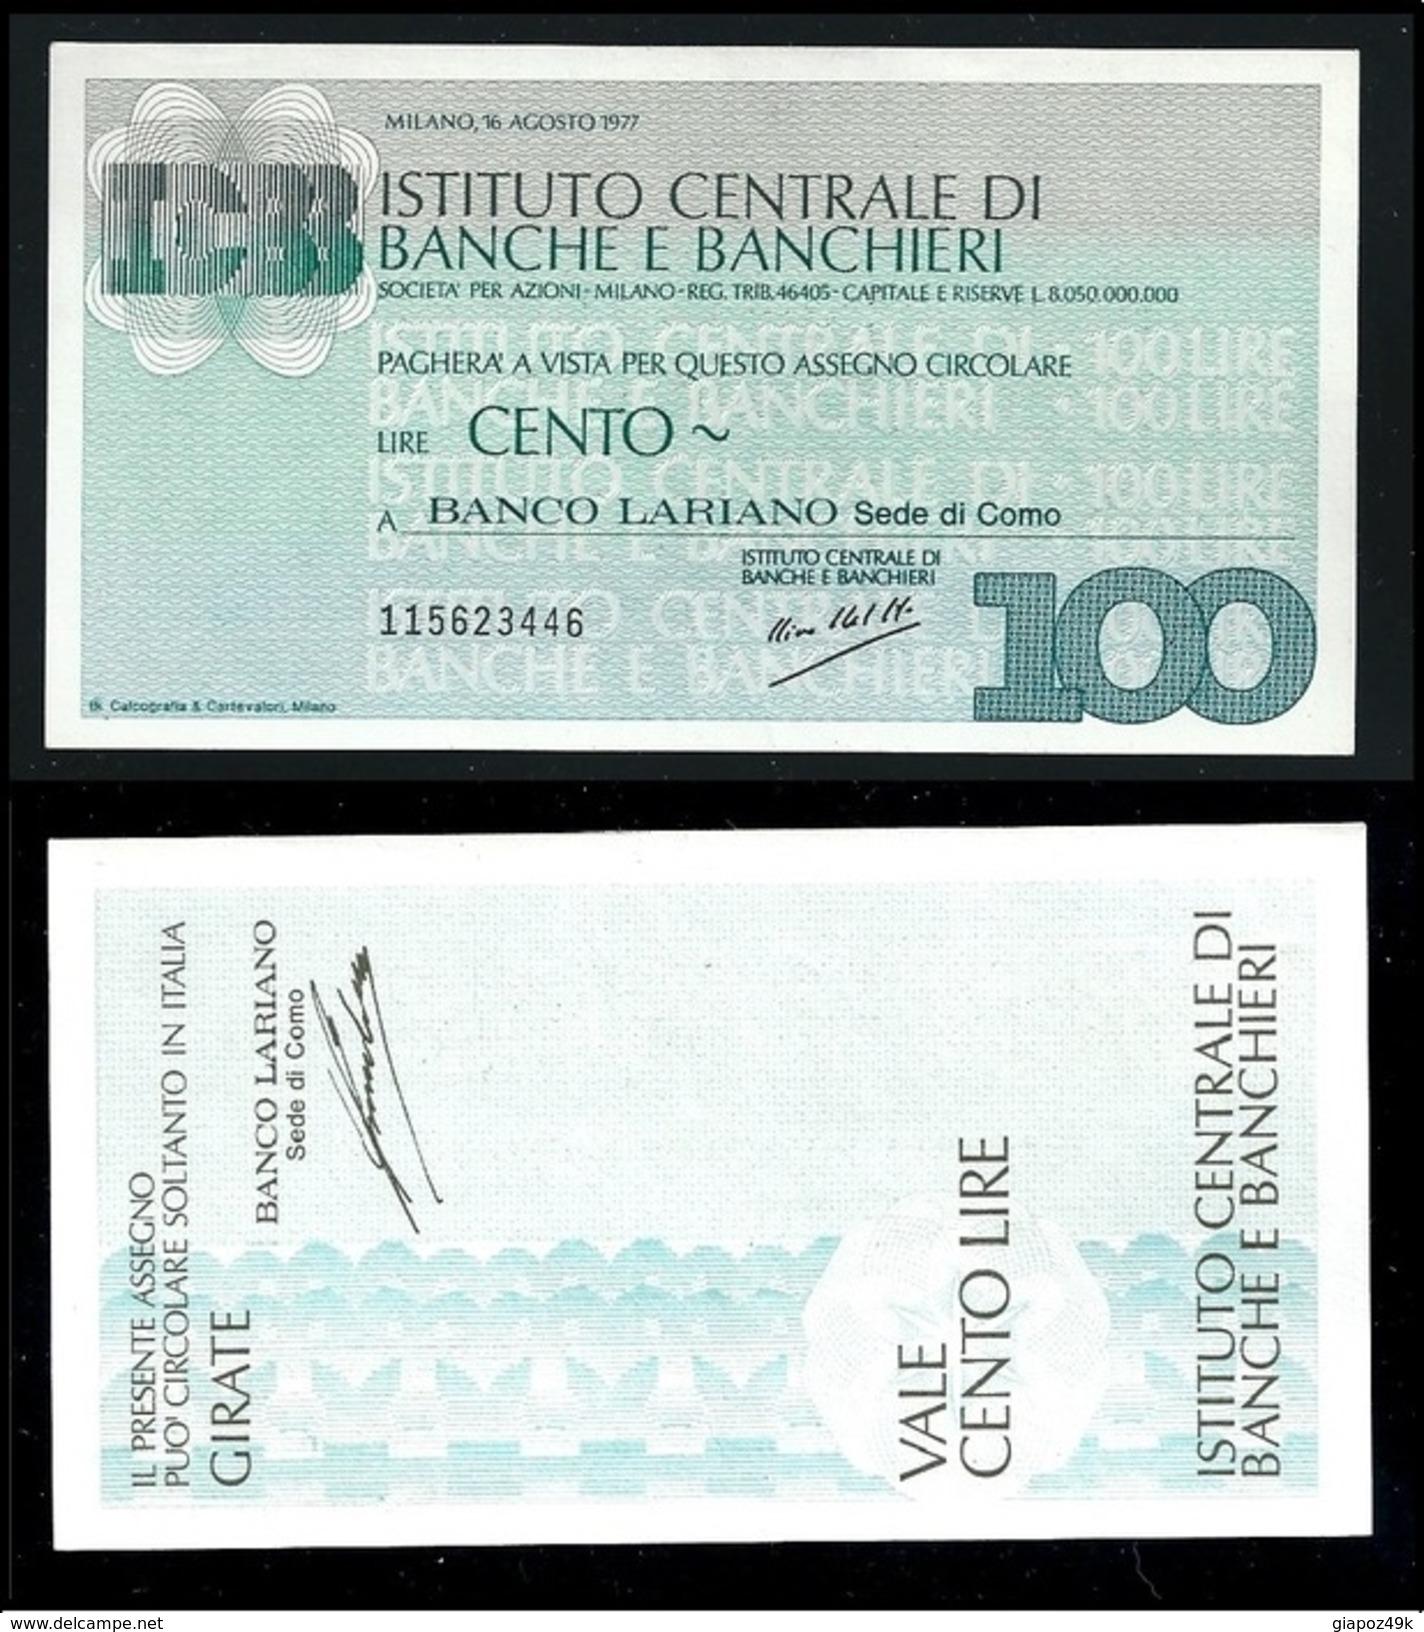 ITALIA 1977 - Mini Assegno - Istituto Centrale Di Banche E Banchieri -  N.°  72 - L. 100 - FDS - [10] Checks And Mini-checks